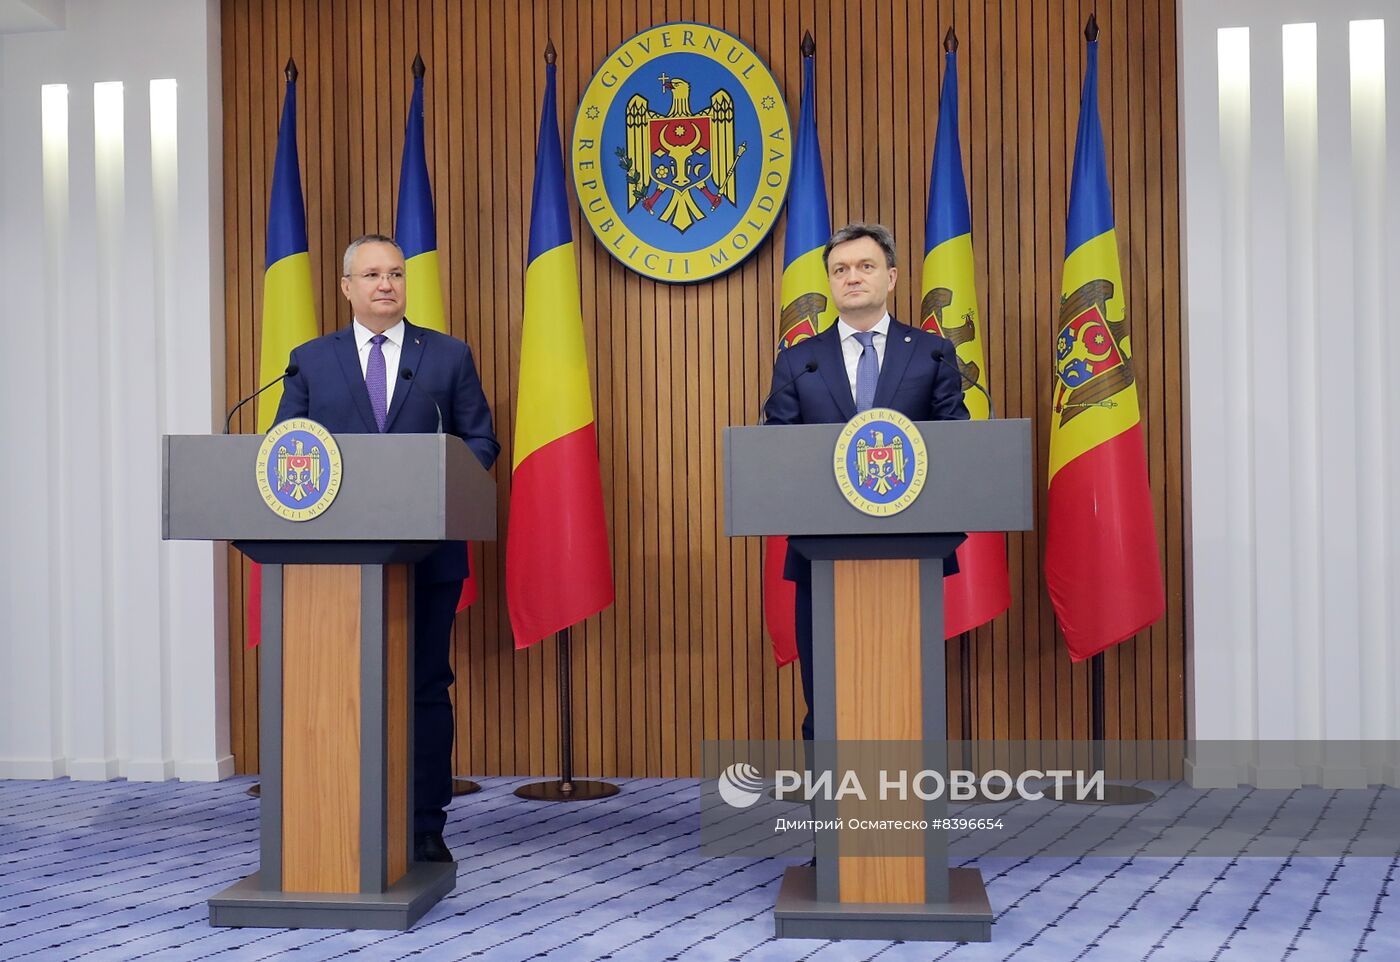 П/к премьер-министра Молдовы Д. Речана и премьер-министра Румынии Н. Чукэ